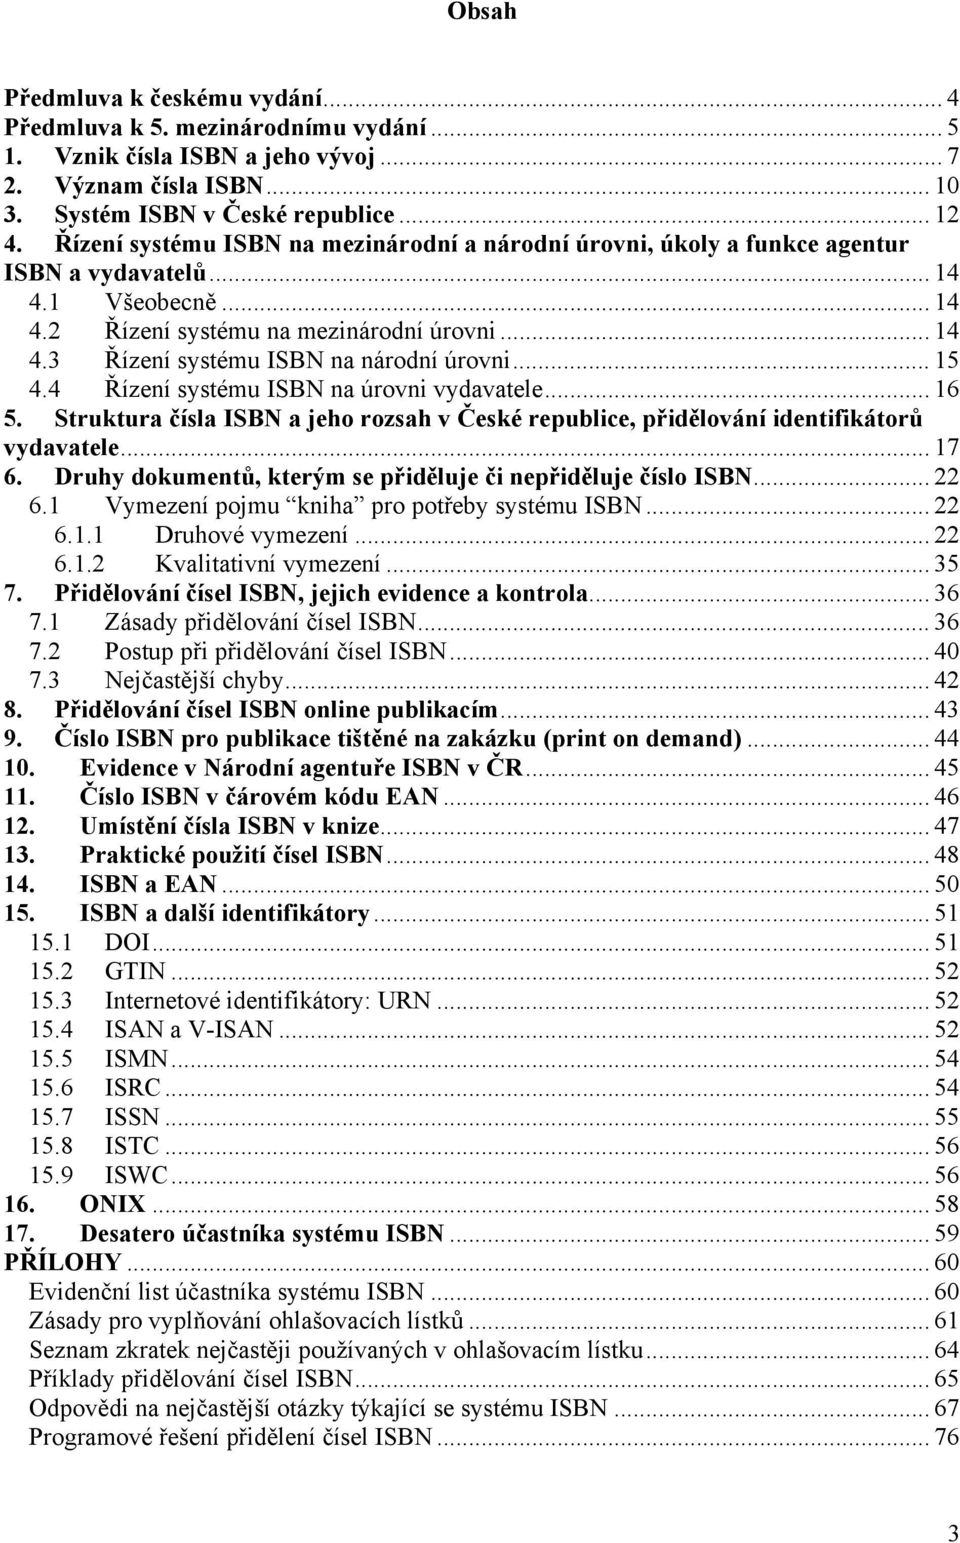 .. 15 4.4 Řízení systému ISBN na úrovni vydavatele... 16 5. Struktura čísla ISBN a jeho rozsah v České republice, přidělování identifikátorů vydavatele... 17 6.